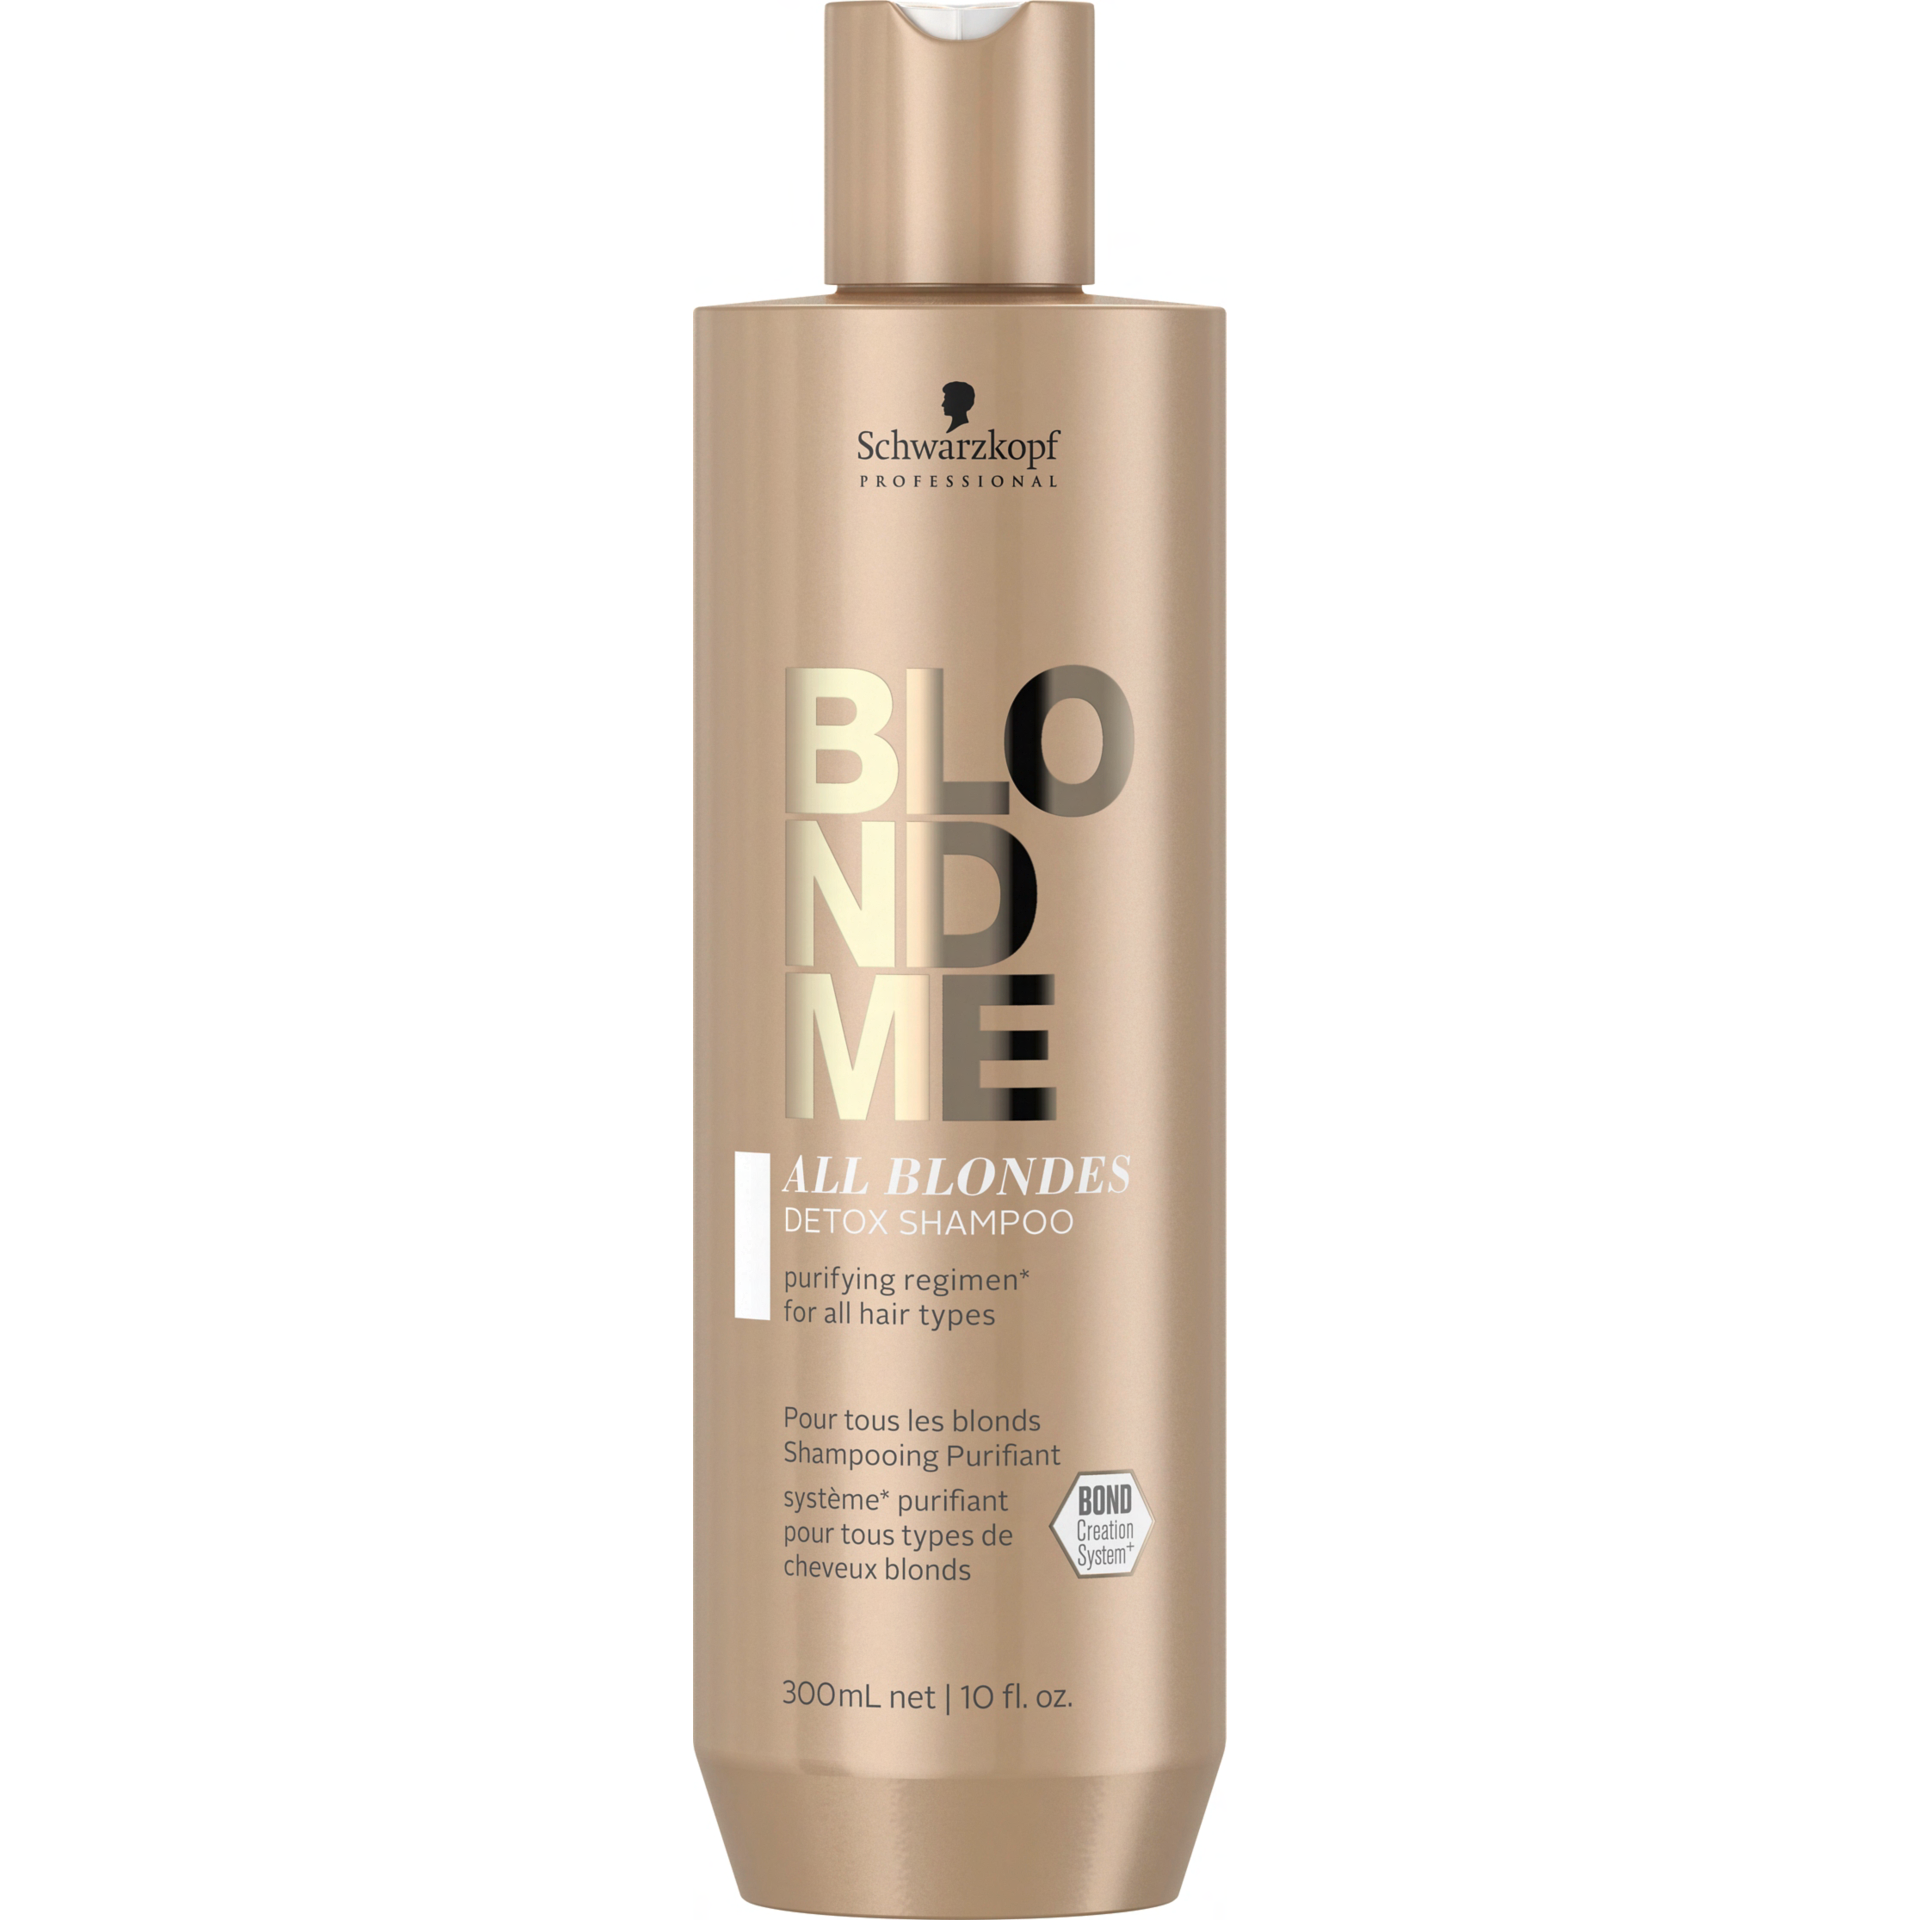 Schwarzkopf Professional BlondMe Detox очищающий шампунь для светлых волос, 300 мл